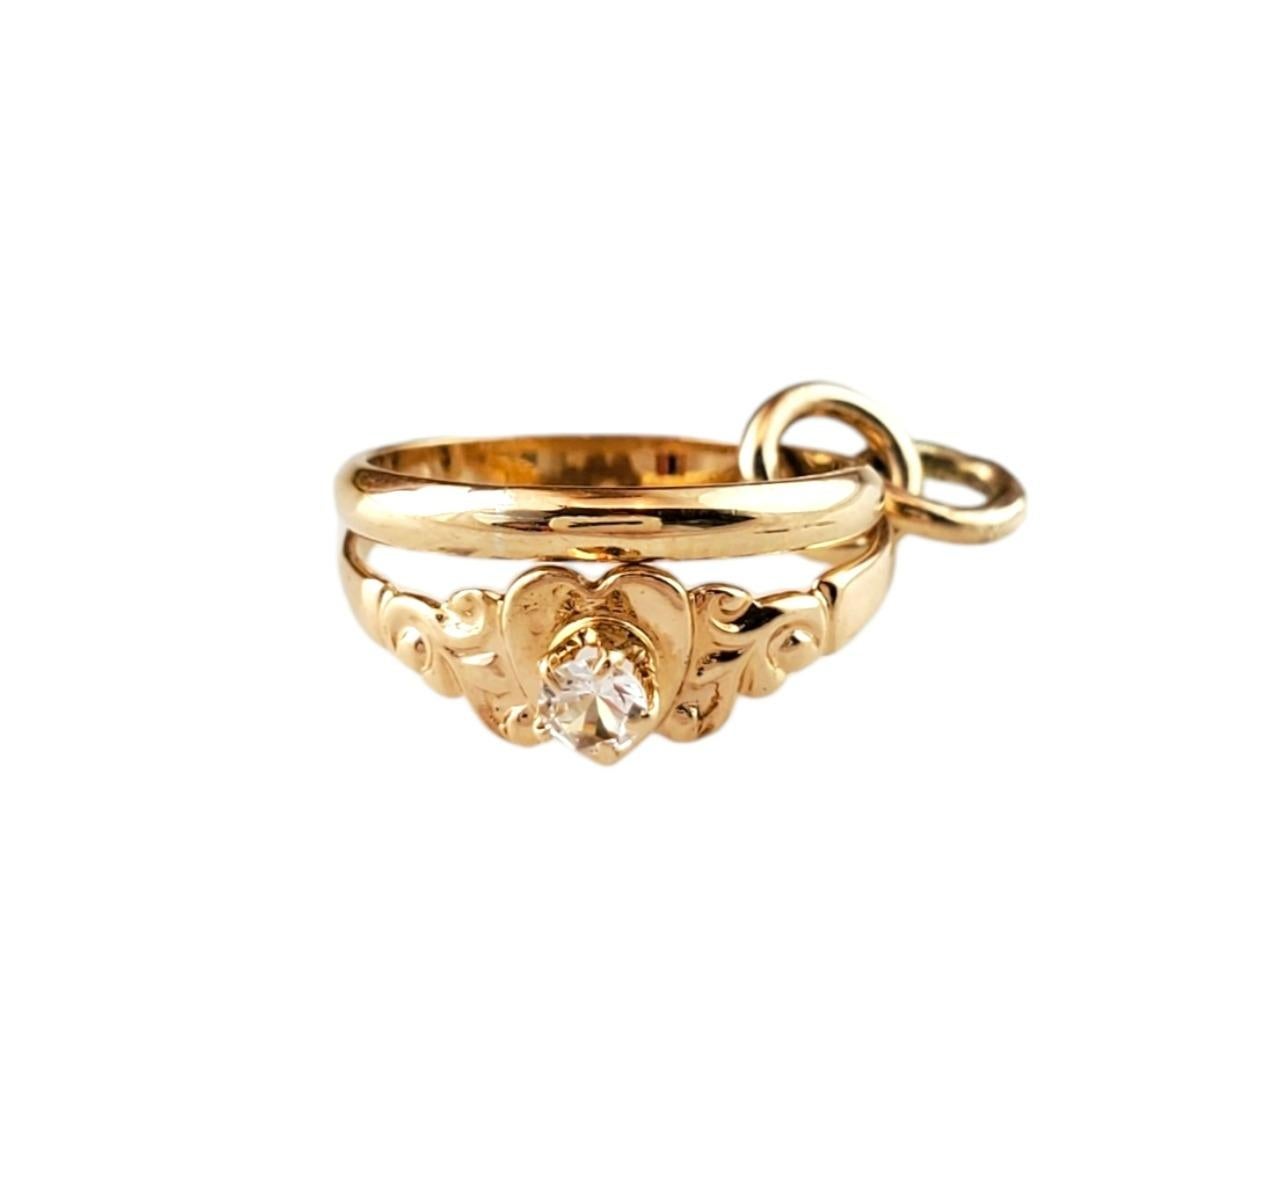 Vintage 14K Gelbgold Mini Verlobungsring & Hochzeit Band Charme - 

Dieser reizende Ehering-Charme zeigt ineinander verschlungene Ringe, die die ewige Einheit symbolisieren. 

Größe: 20,95 mm x 15,9 mm

Gewicht: 0,8 dwt/ 1,3 g

Punze: 14K

Sehr